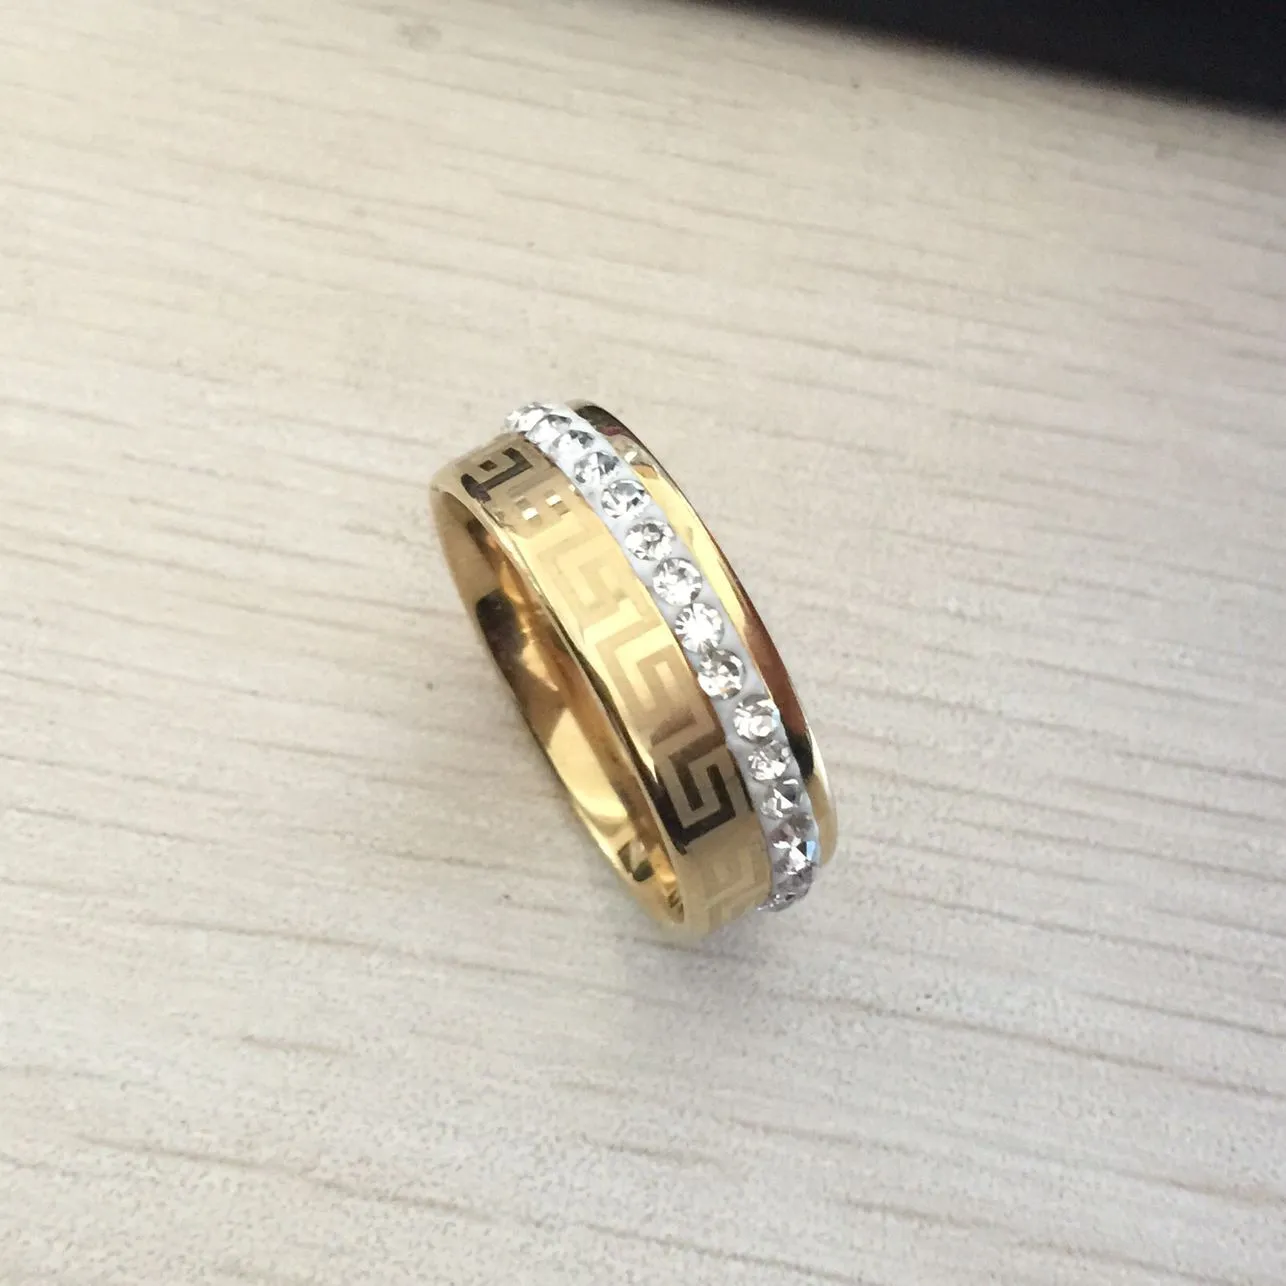 2017 nuovo lusso di alta qualità largo 8mm 316 acciaio al titanio placcato oro giallo chiave greca fede nuziale anello di cristallo uomo donna273C